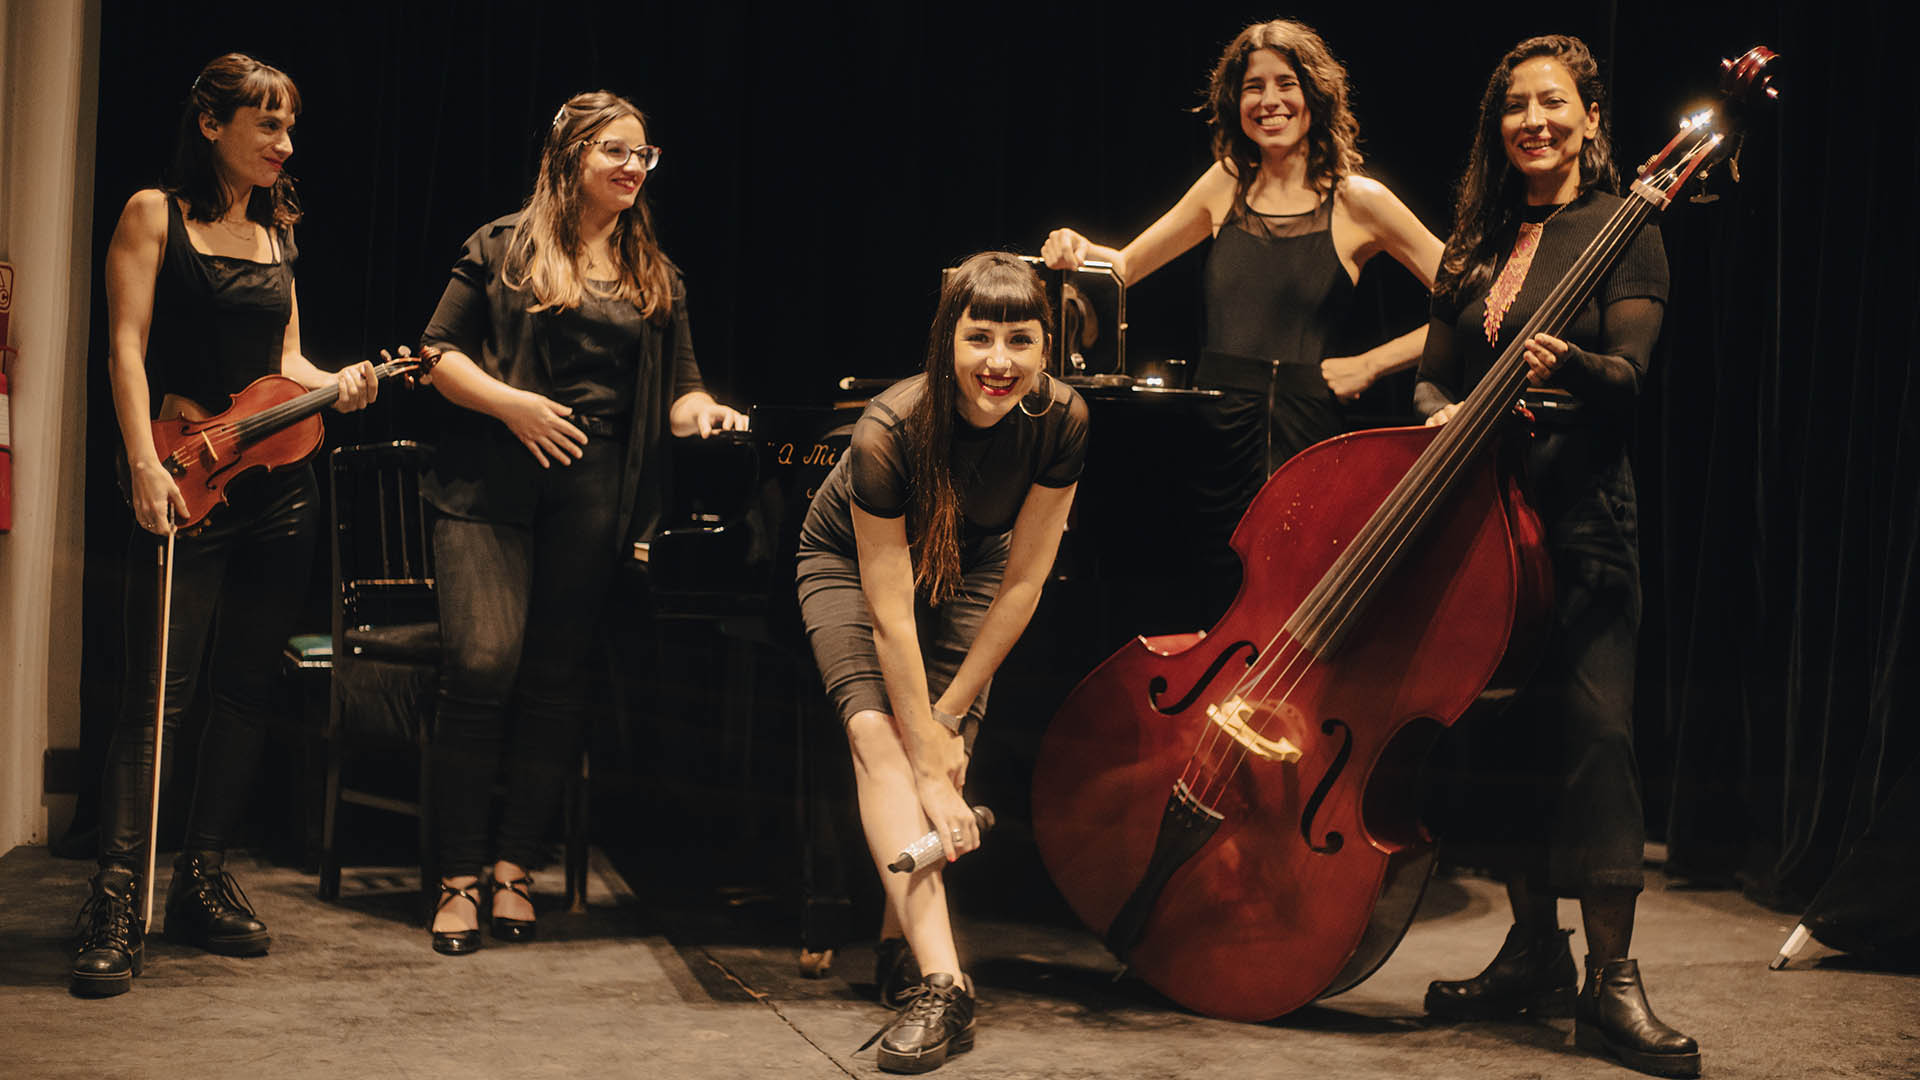 La orquesta de tango de mujeres que sólo toca música creada por su género: “La historia nos tenía muy atrás”